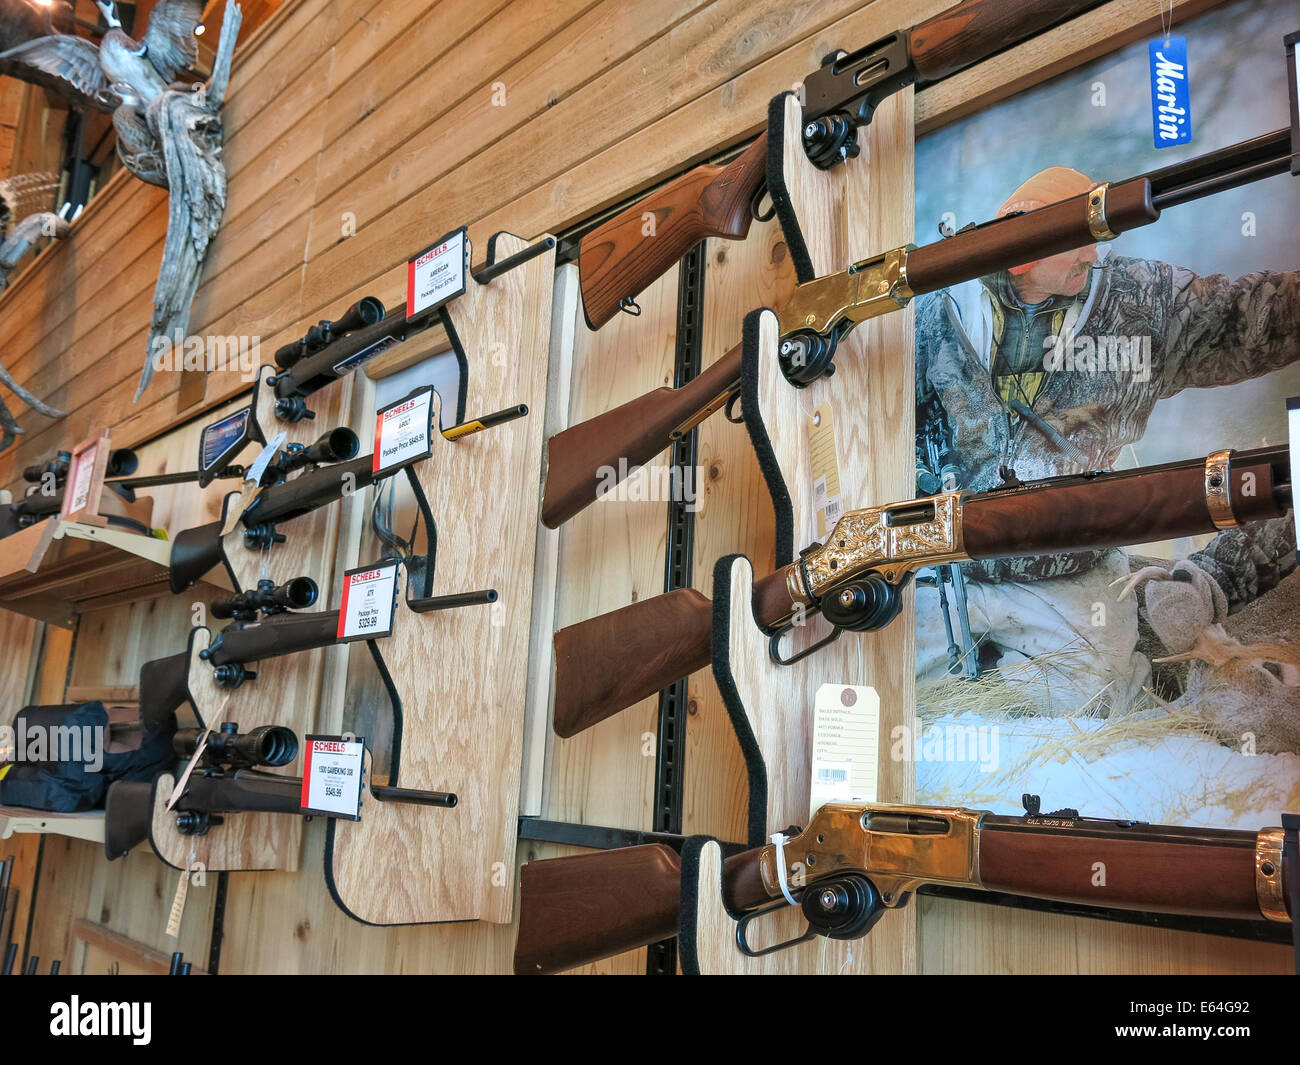 Lever Action Rifles, Scheels Magasin d'articles de sport, de Great Falls, Montana, USA Banque D'Images